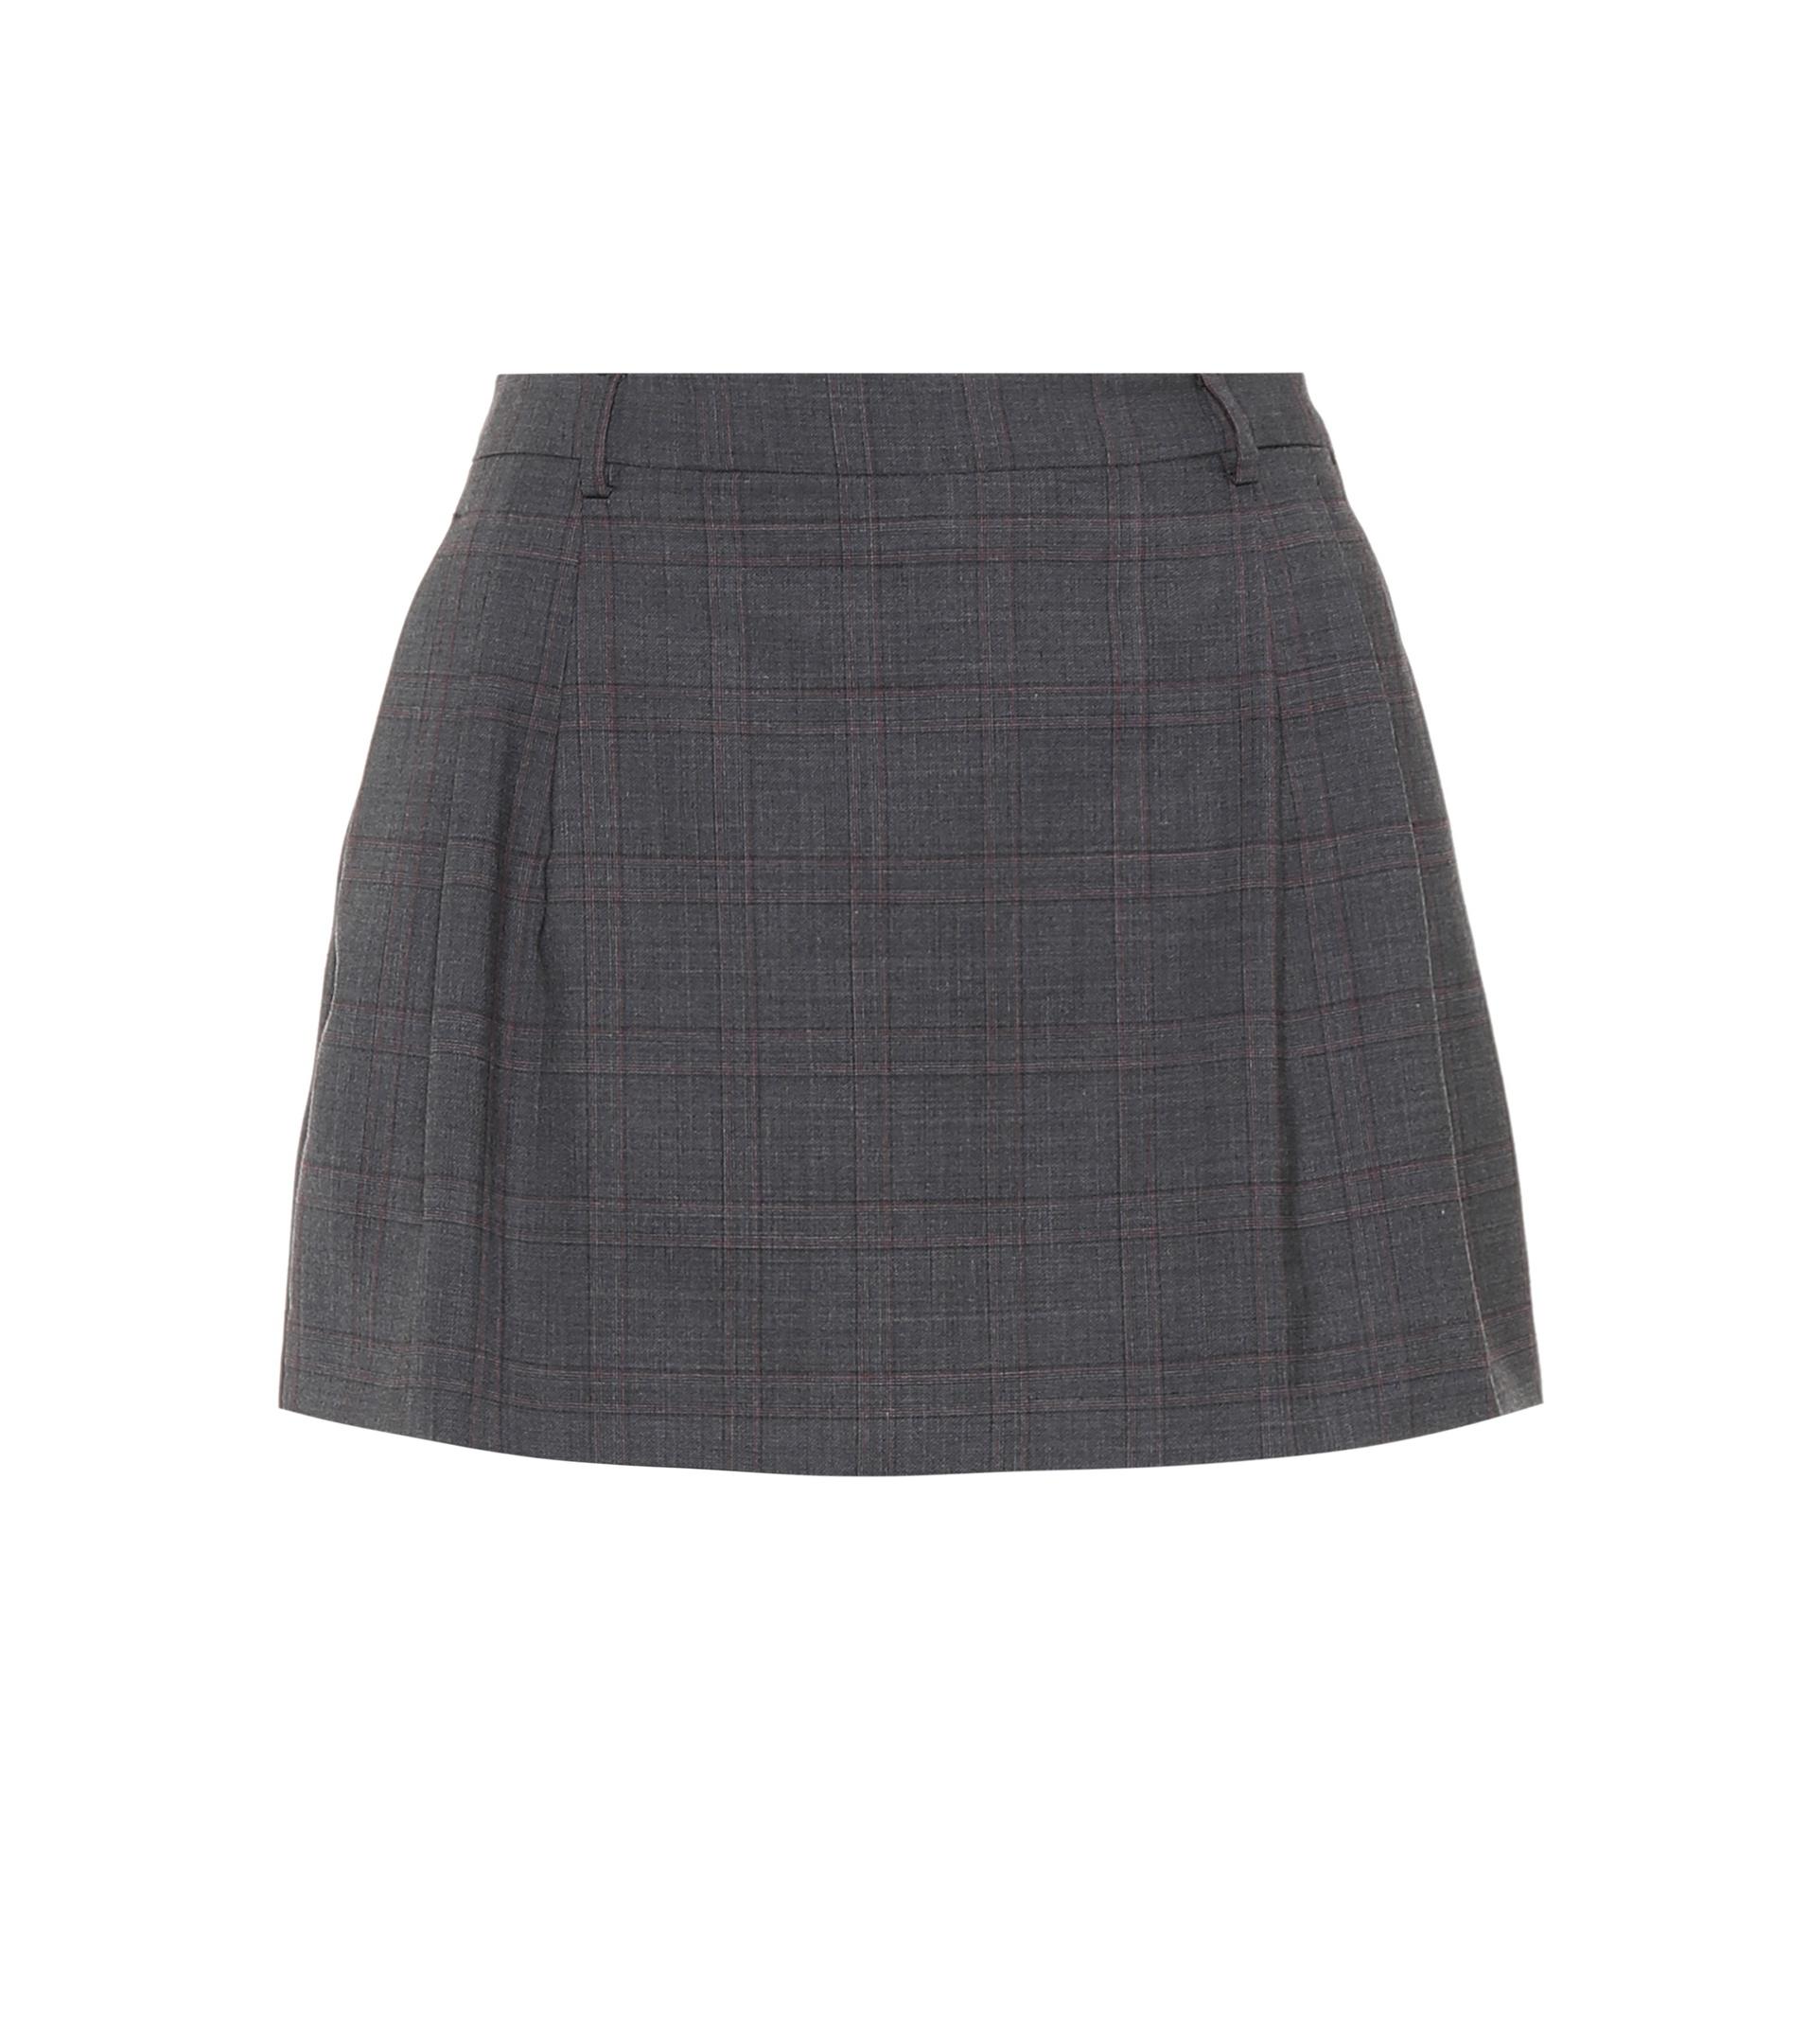 Miu Miu Checked Wool Miniskirt in Grey (Gray) - Lyst